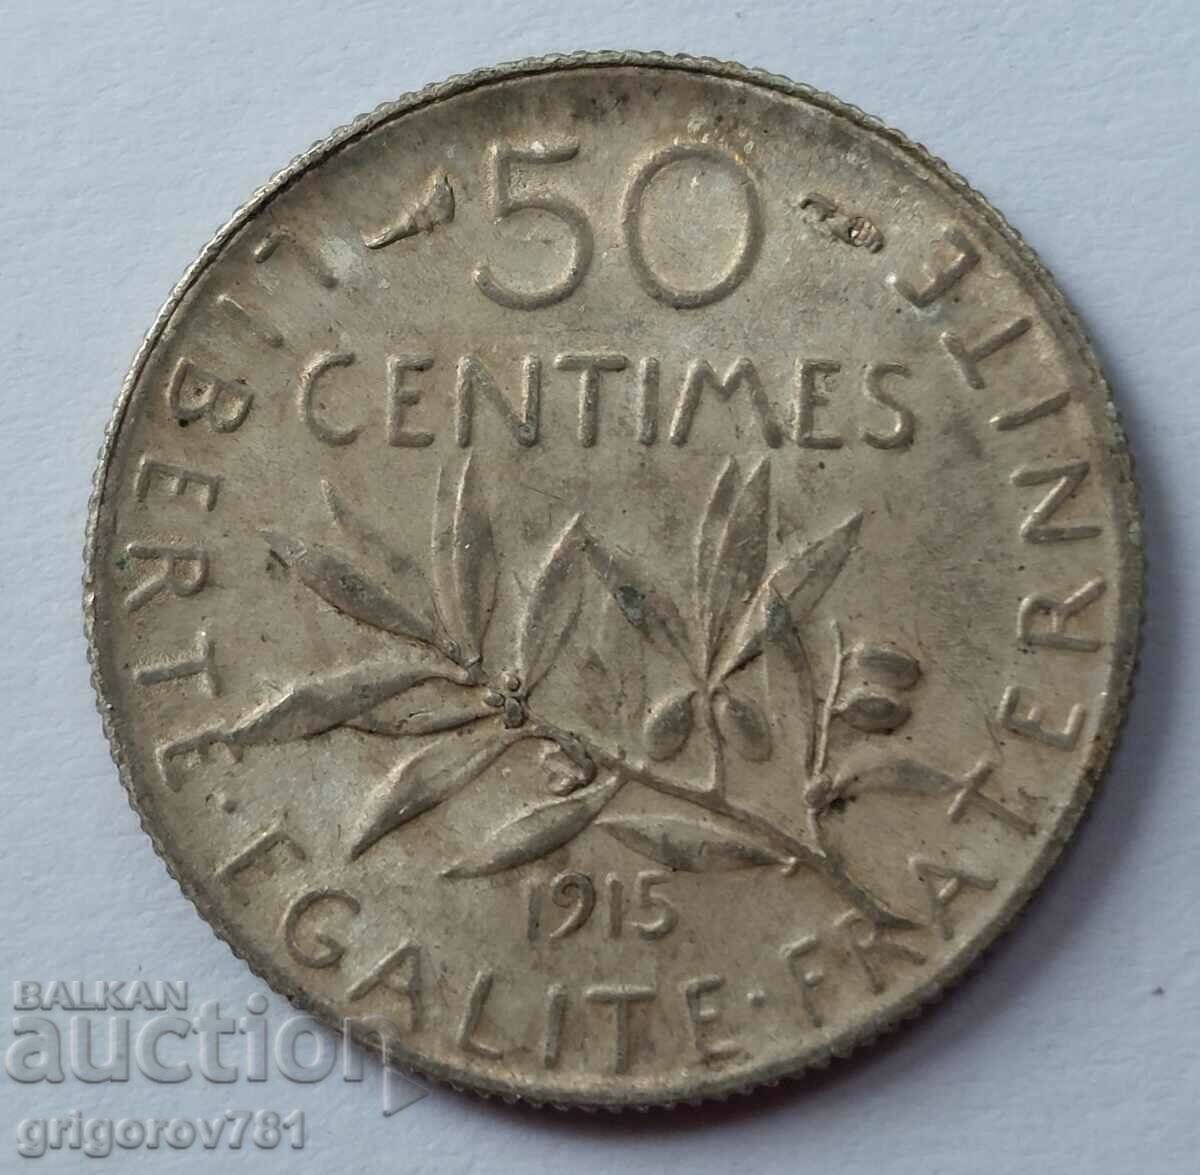 Ασημένιο 50 εκατοστά Γαλλία 1915 - ασημένιο νόμισμα №60